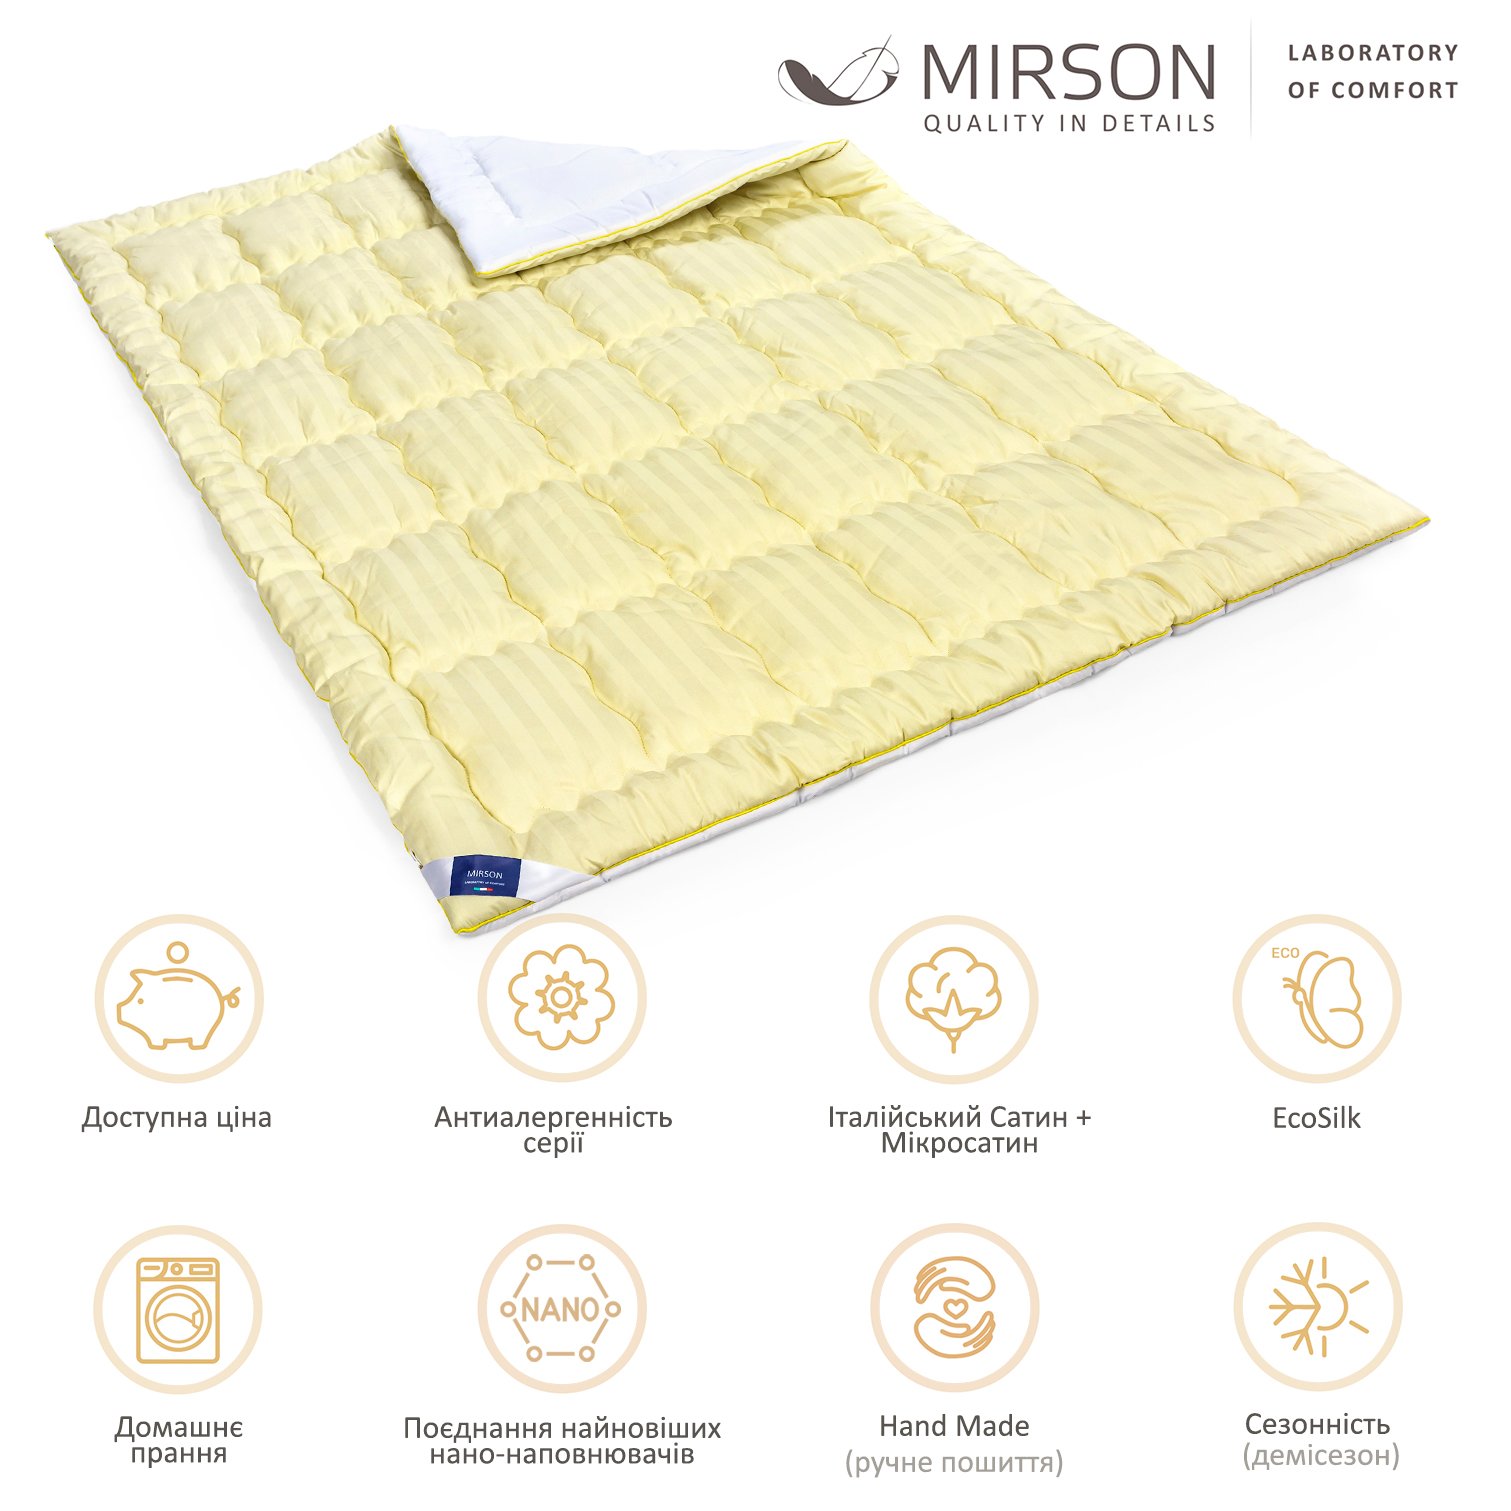 Одеяло антиаллергенное MirSon Carmela Hand Made EcoSilk №0552, демисезонное, 220x240 см, желто-белое - фото 6